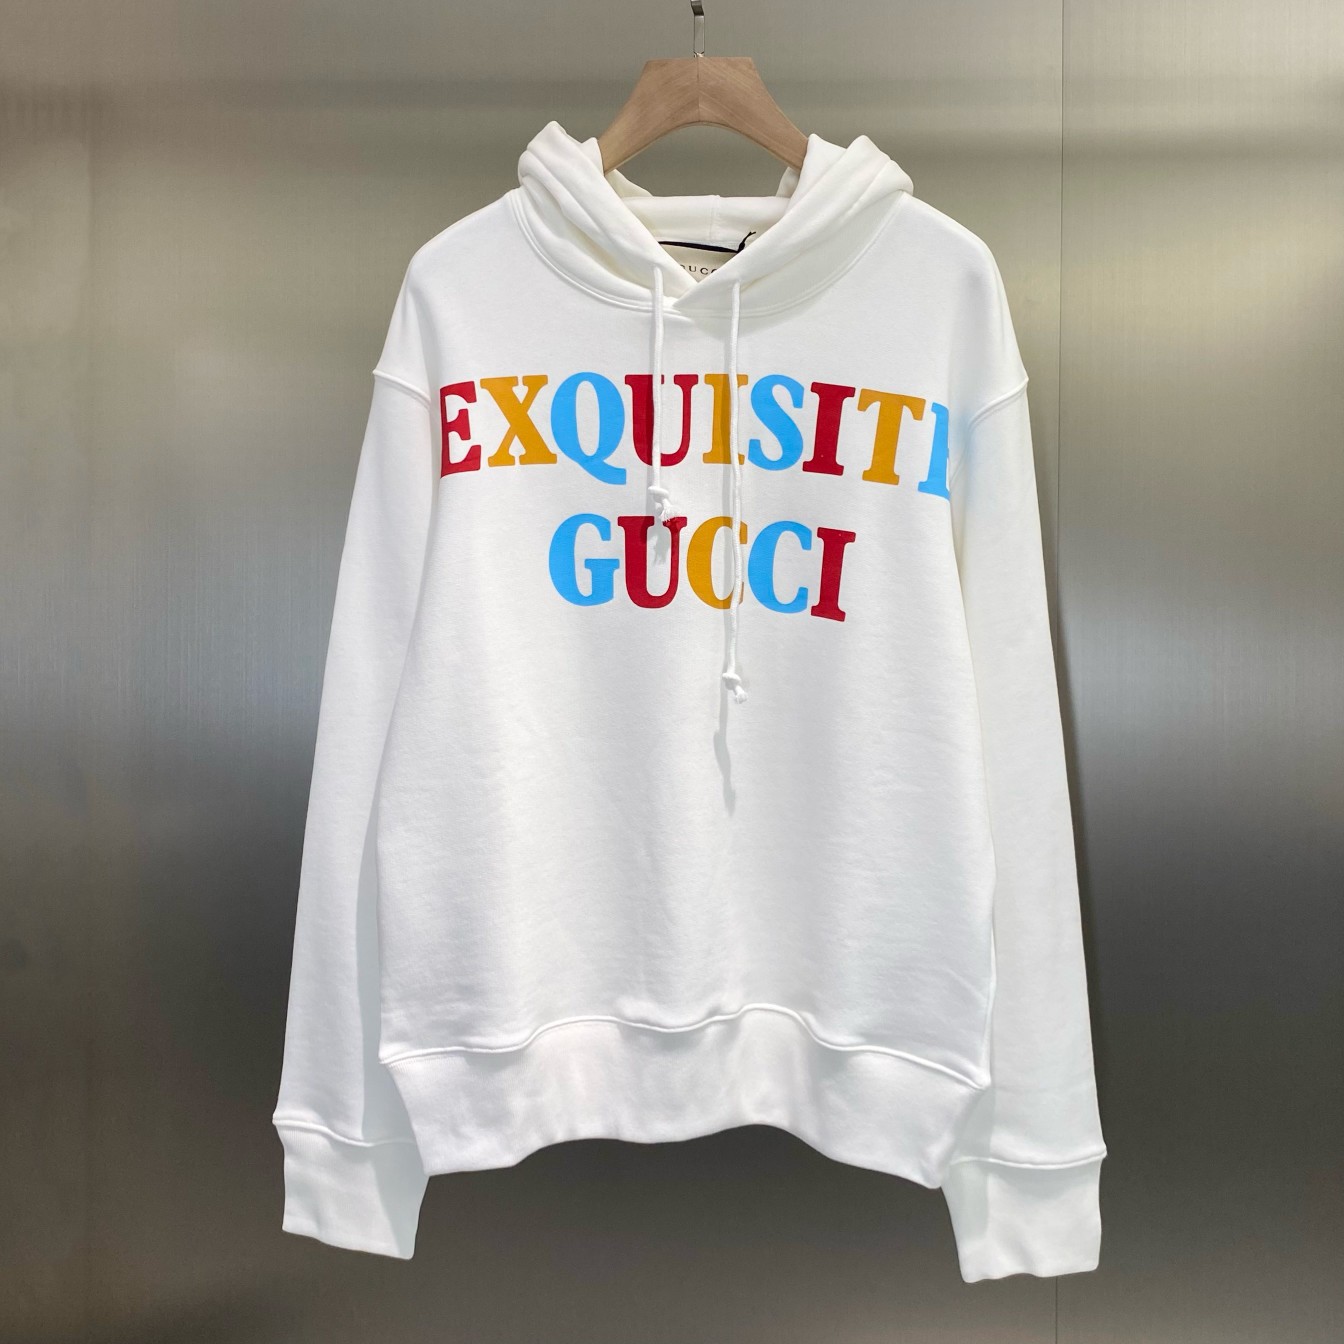 Exquisite Gui”人物卫衣 型号 2001-225 尺寸 XS-XL 这款米白色兜帽卫衣